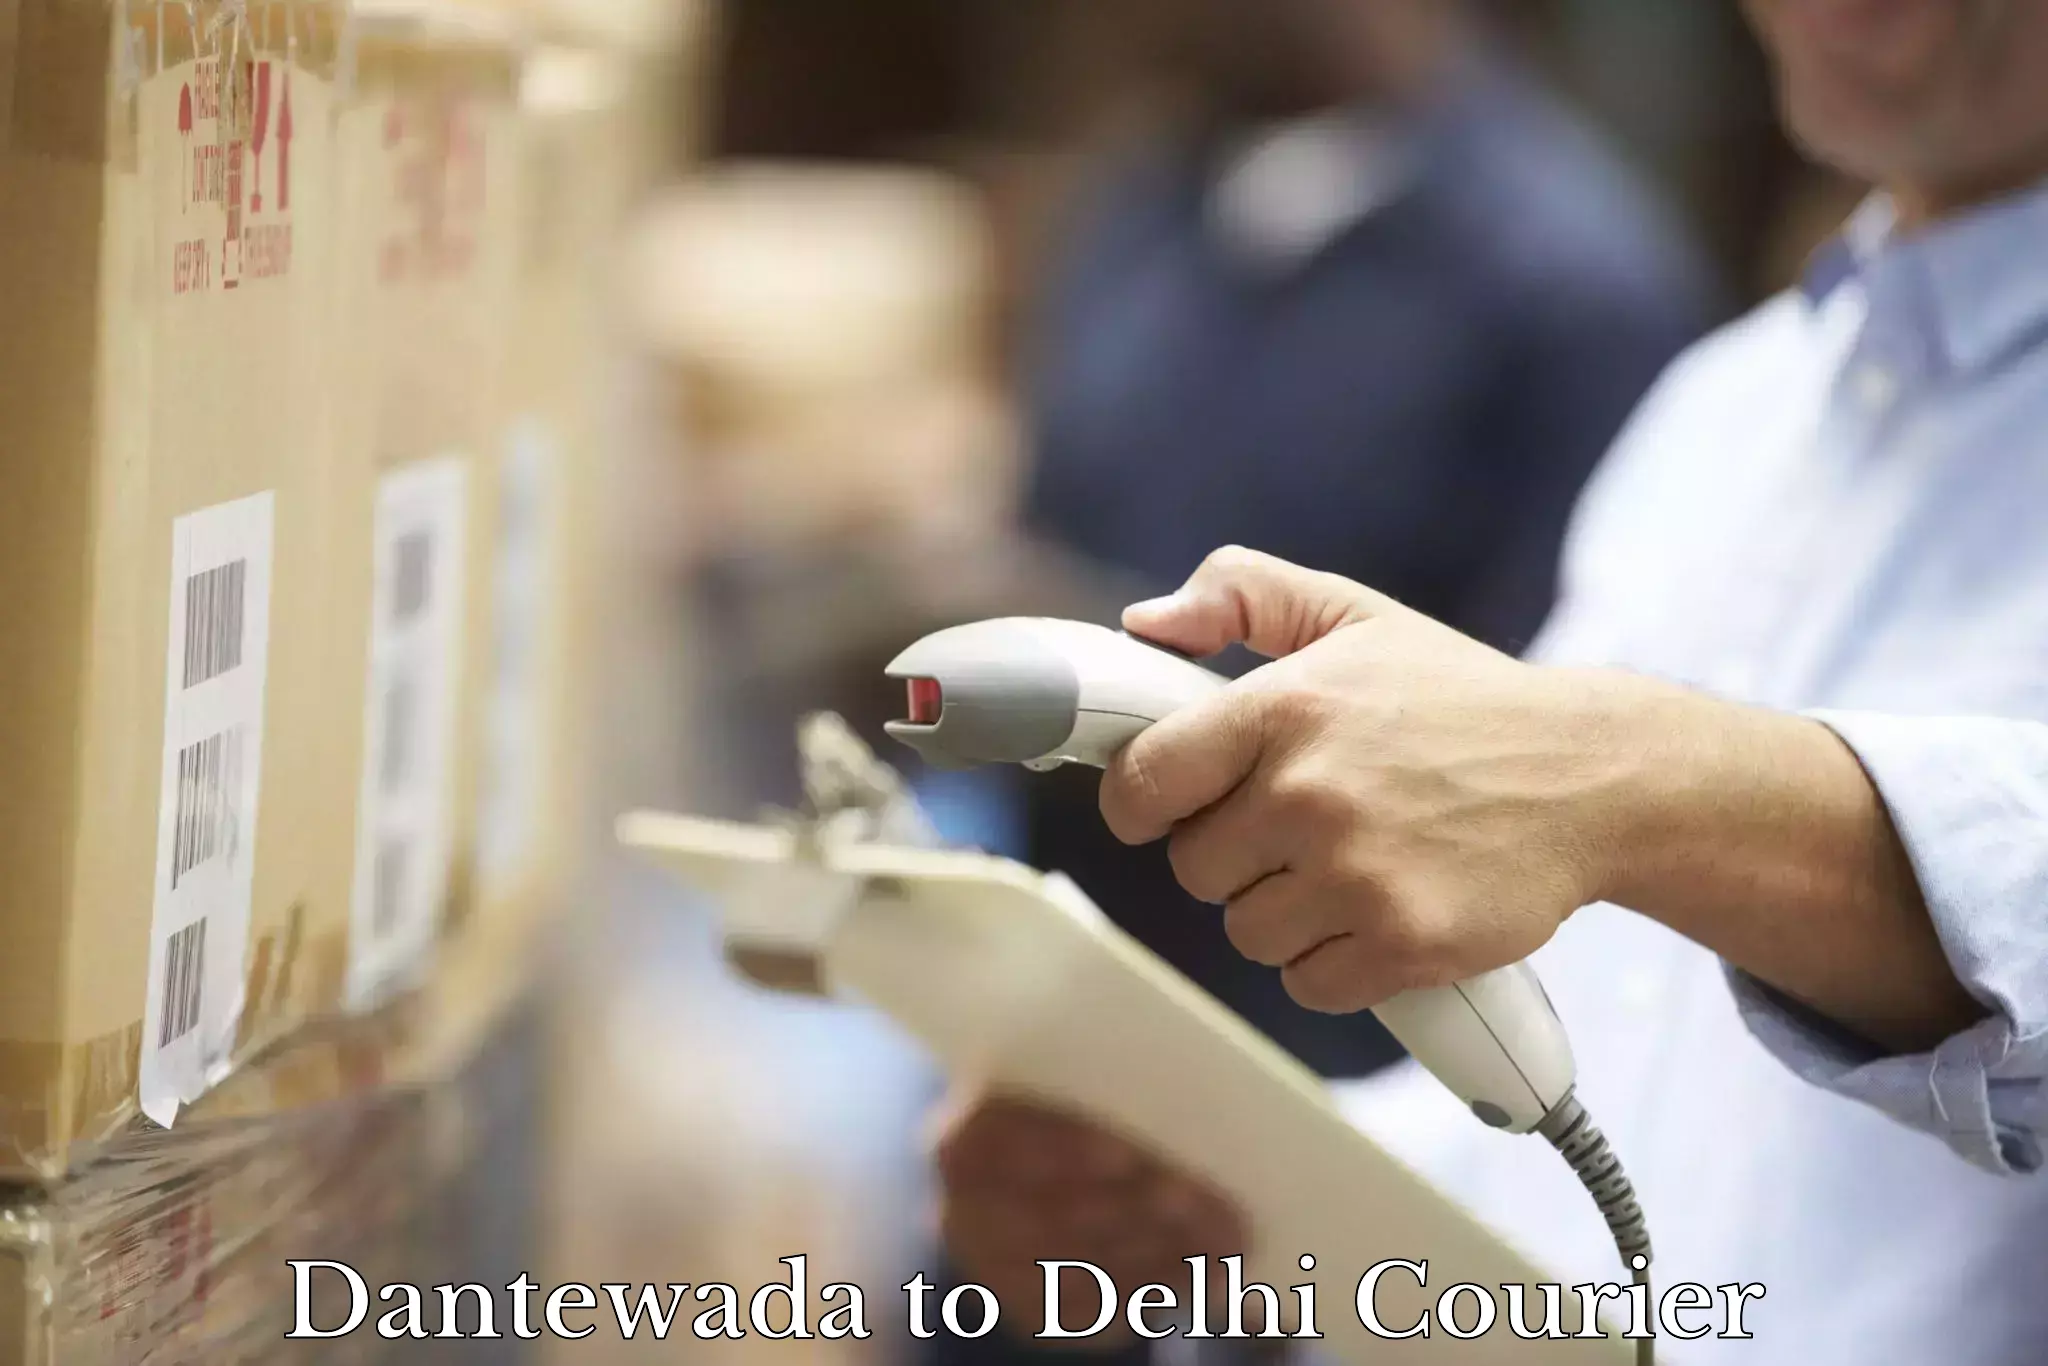 Local delivery service Dantewada to Jamia Millia Islamia New Delhi